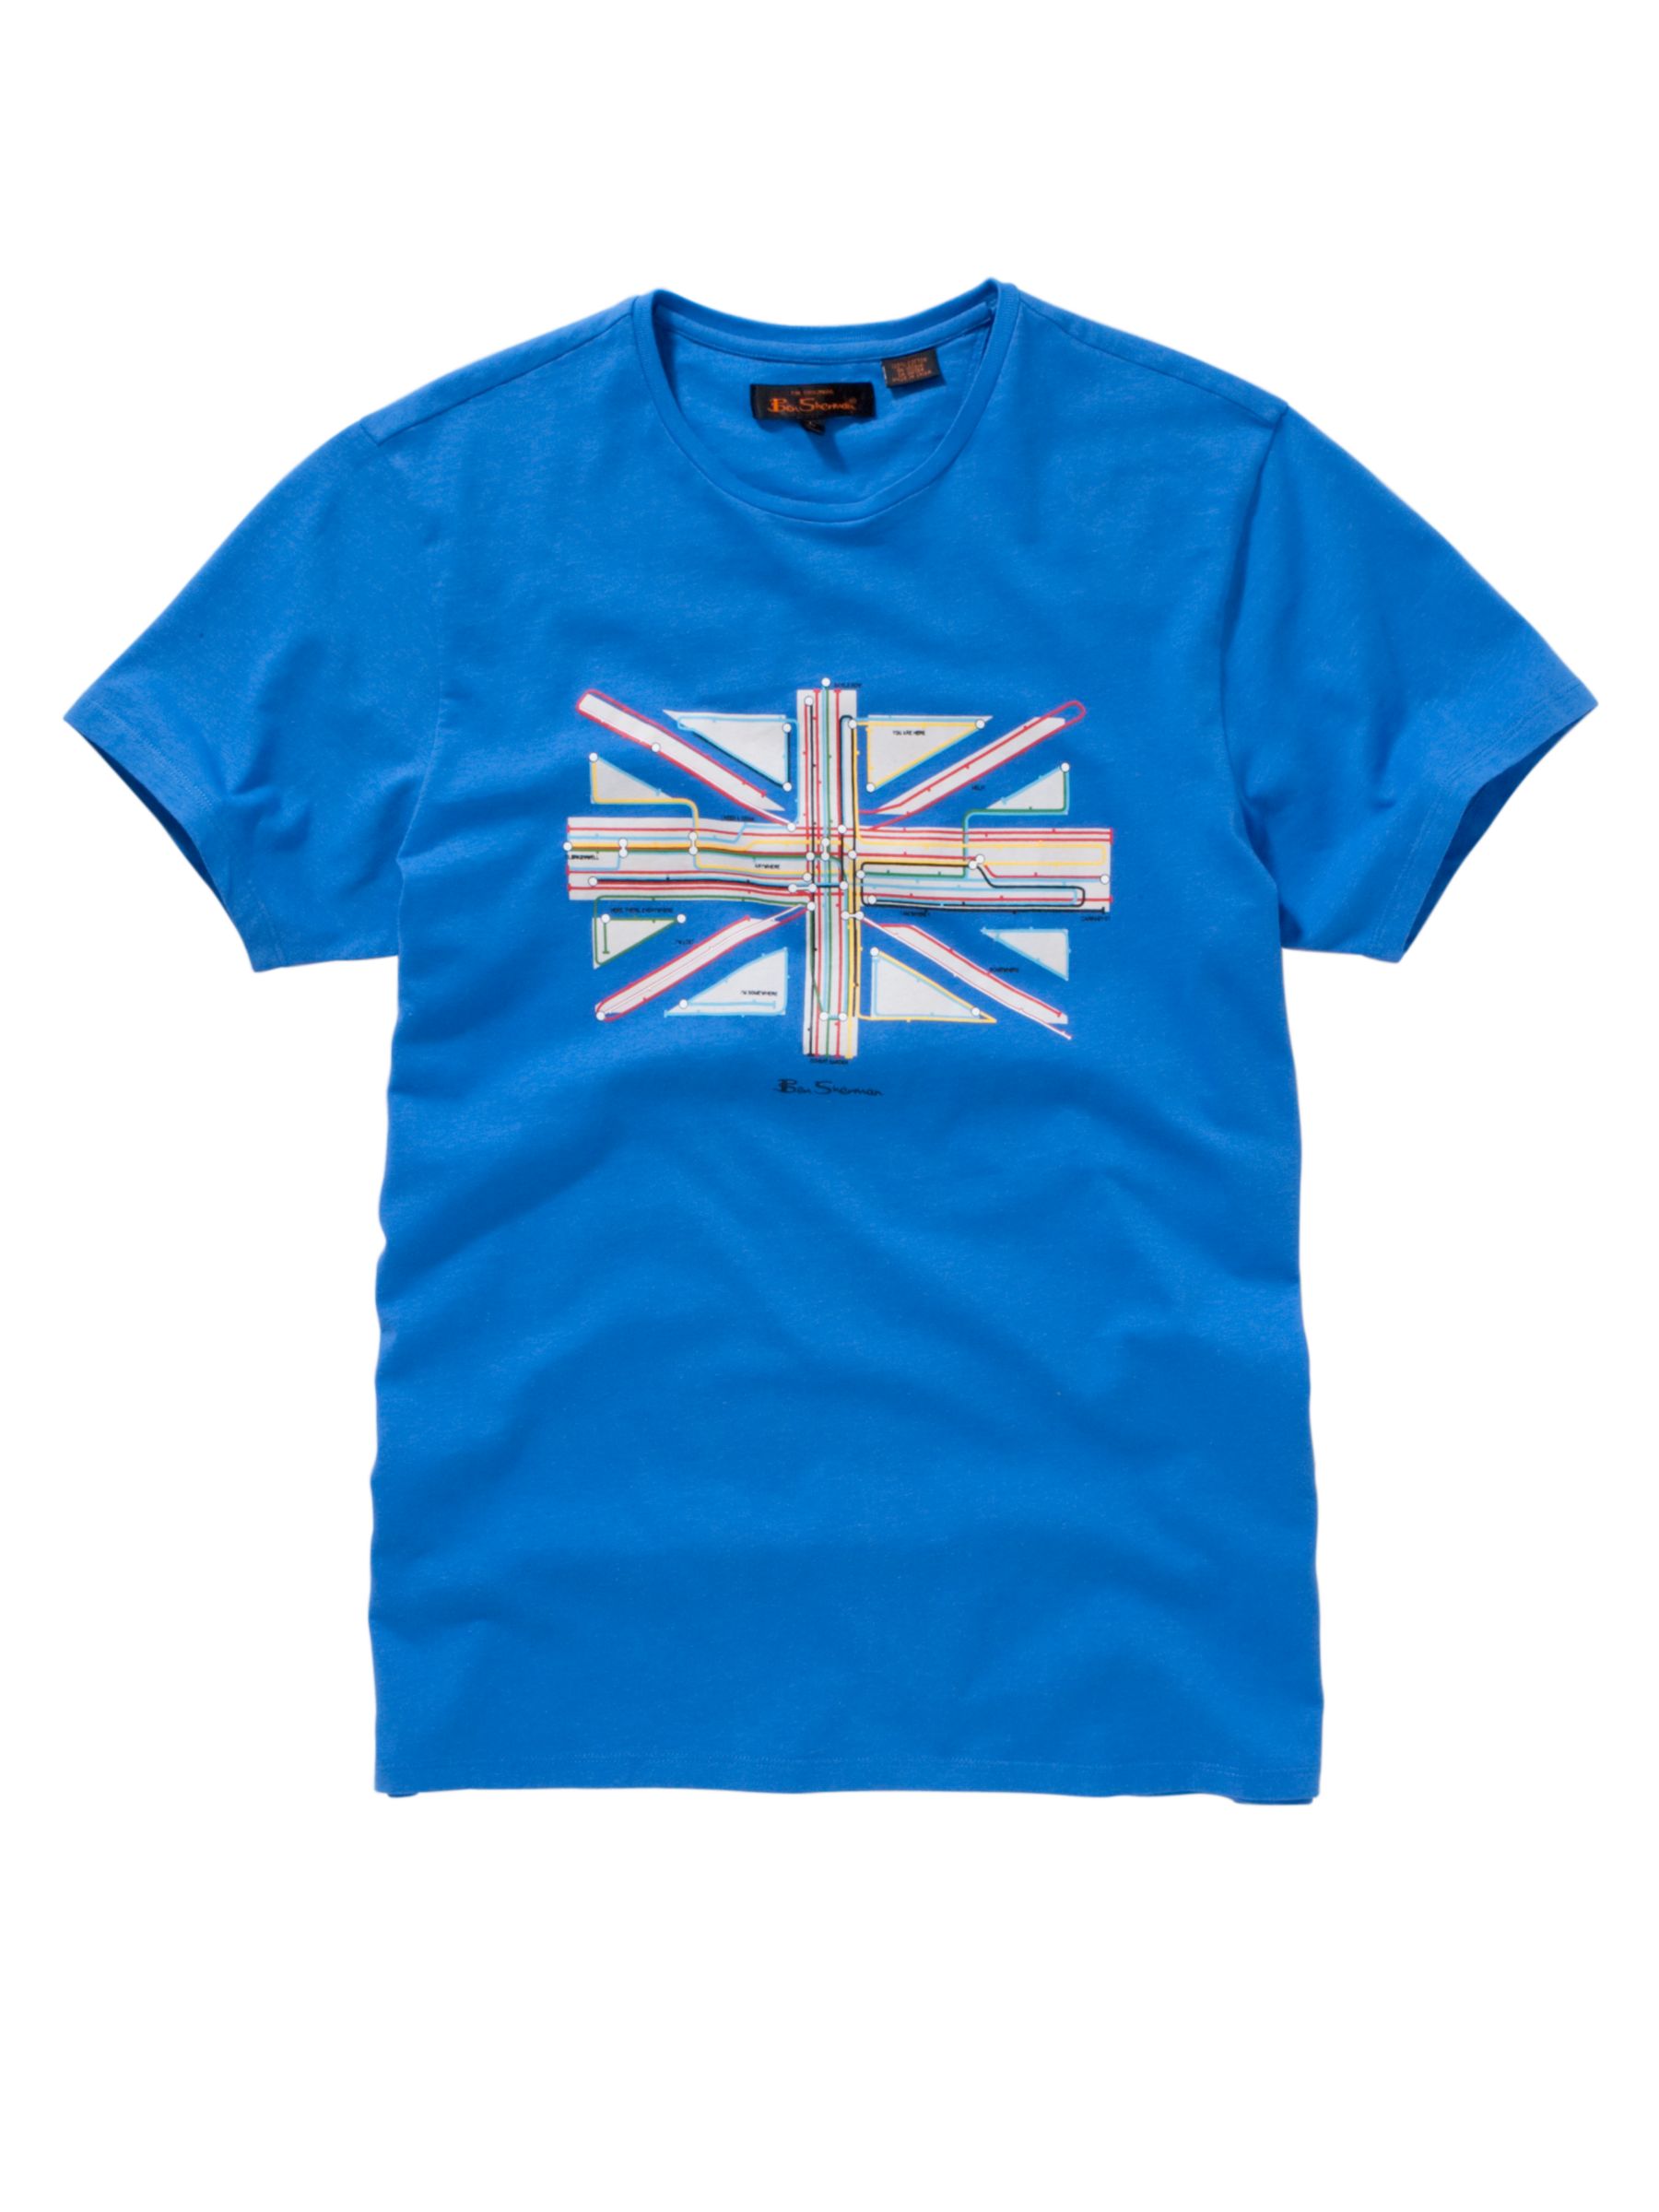 Ben Sherman Union Jack Tube T-Shirt, Blue